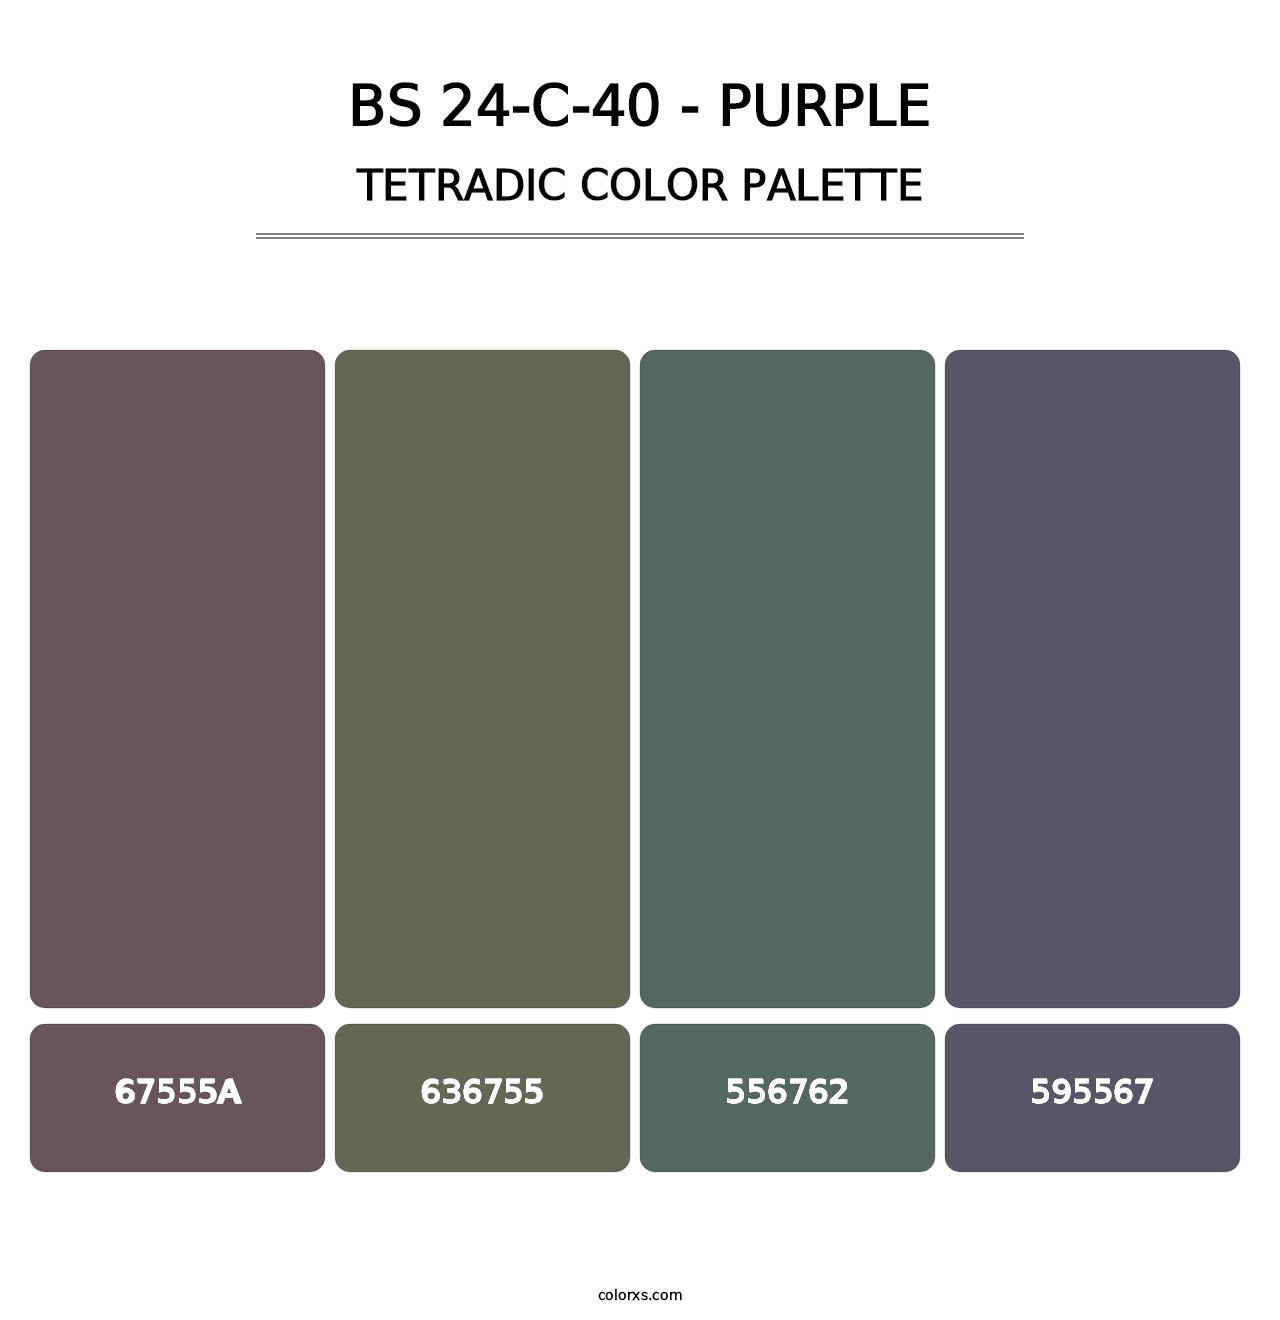 BS 24-C-40 - Purple - Tetradic Color Palette